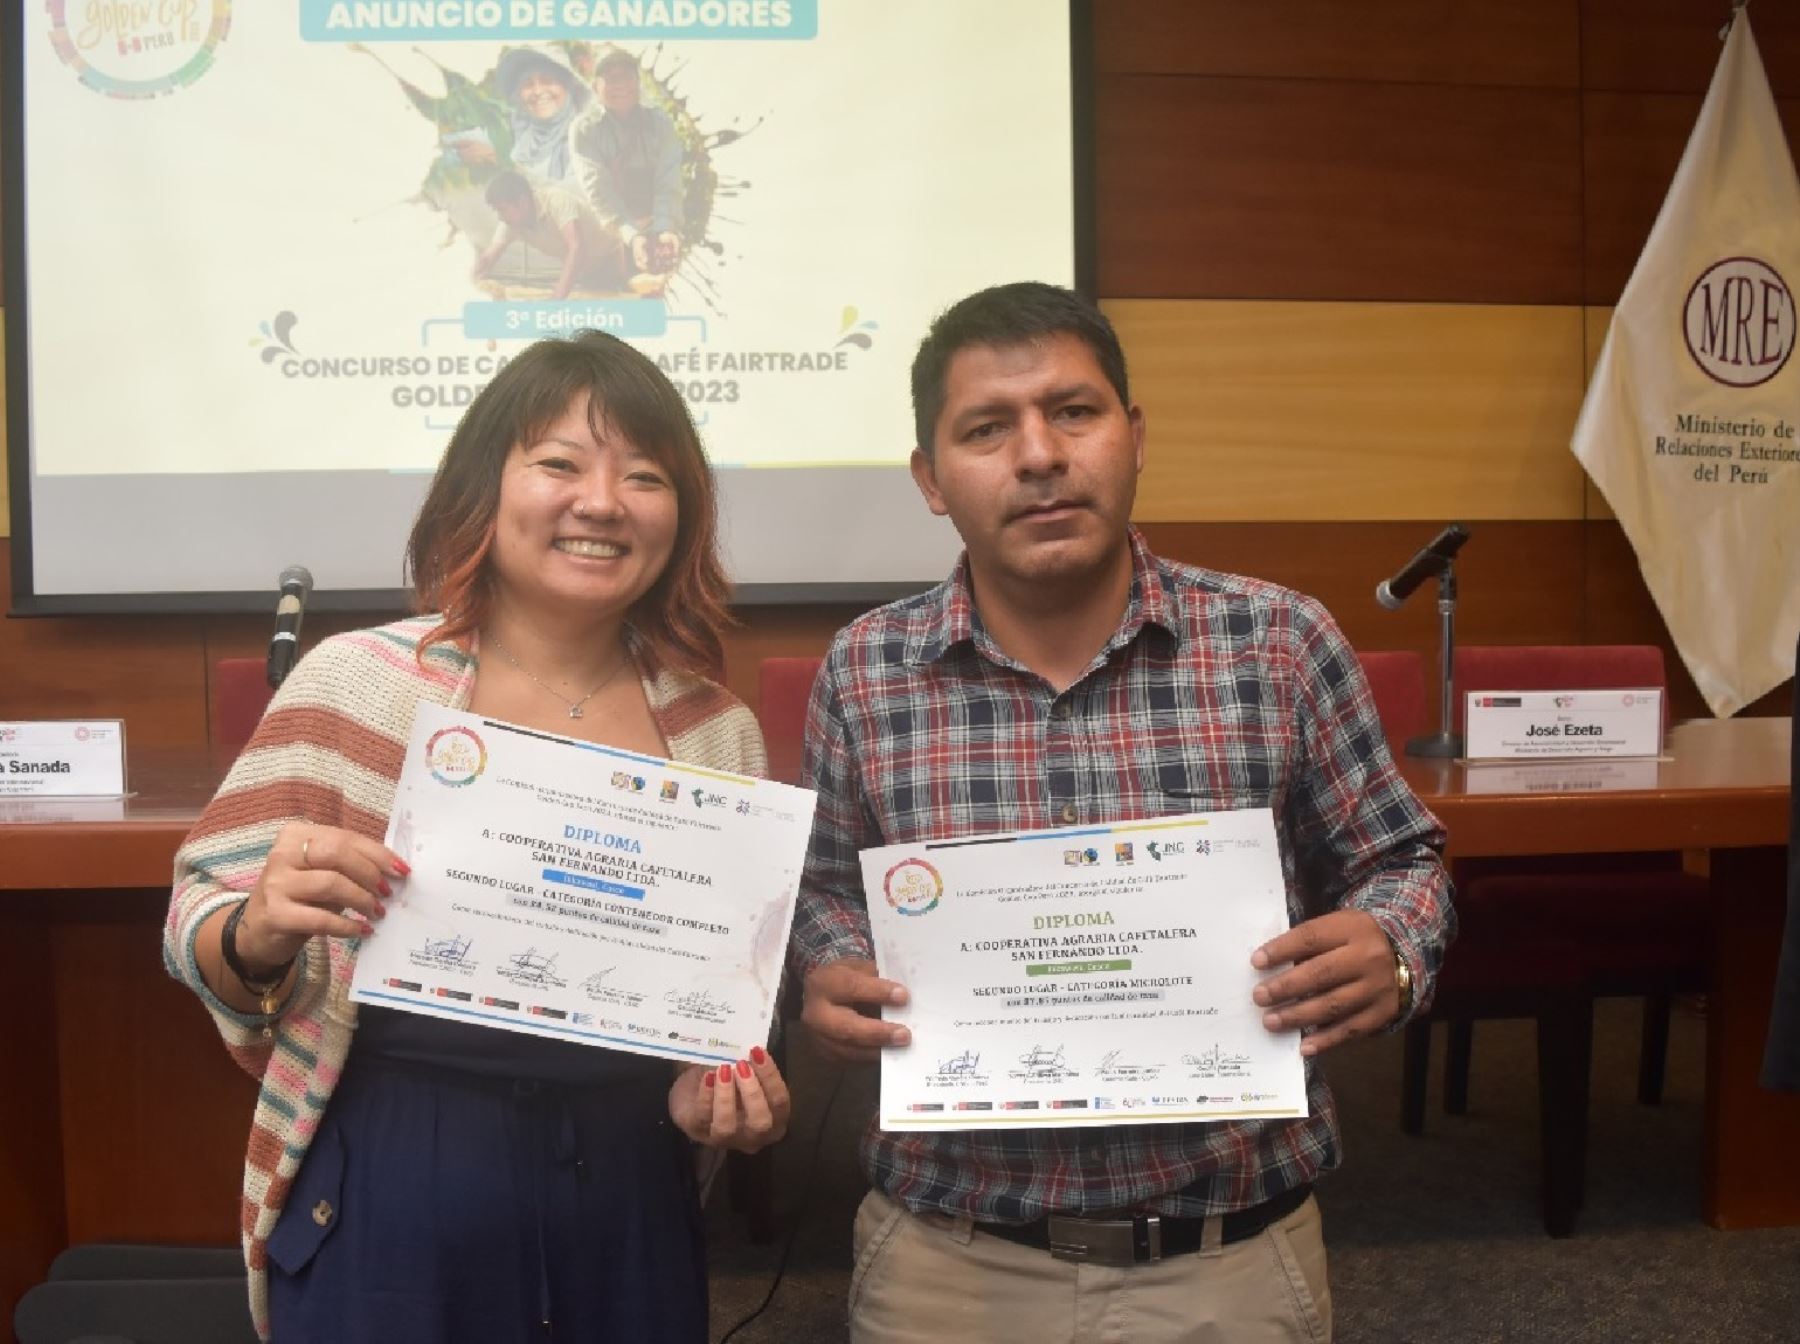 Cafés especiales de Cajamarca y Cusco triunfaron en el III Concurso Nacional de Café al obtener los más altos puntajes.